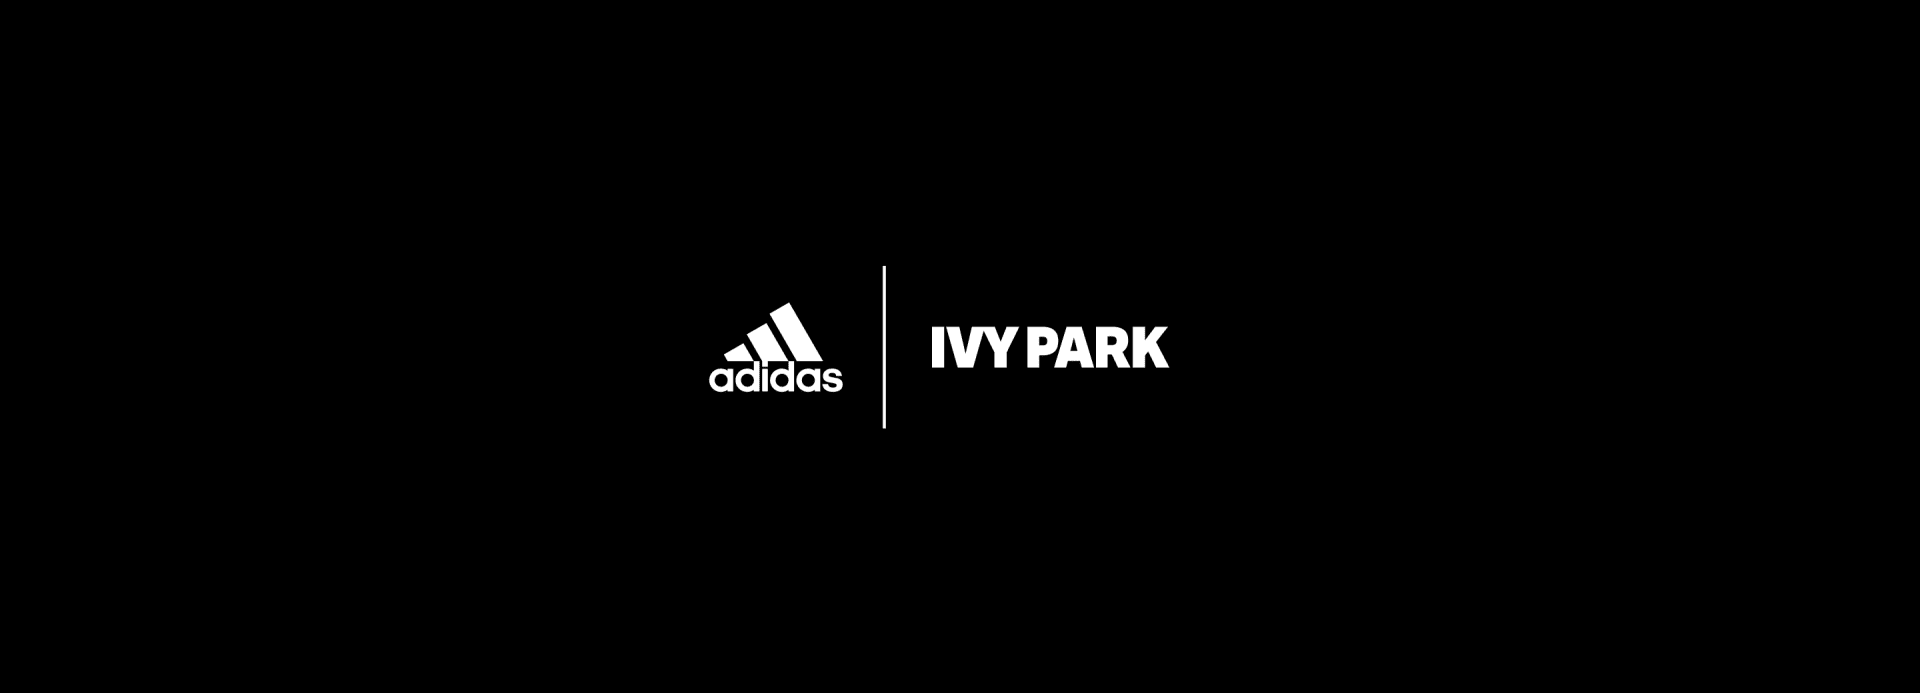 Ivy Paradise: nova collab da adidas com IVY Park homenageia a era